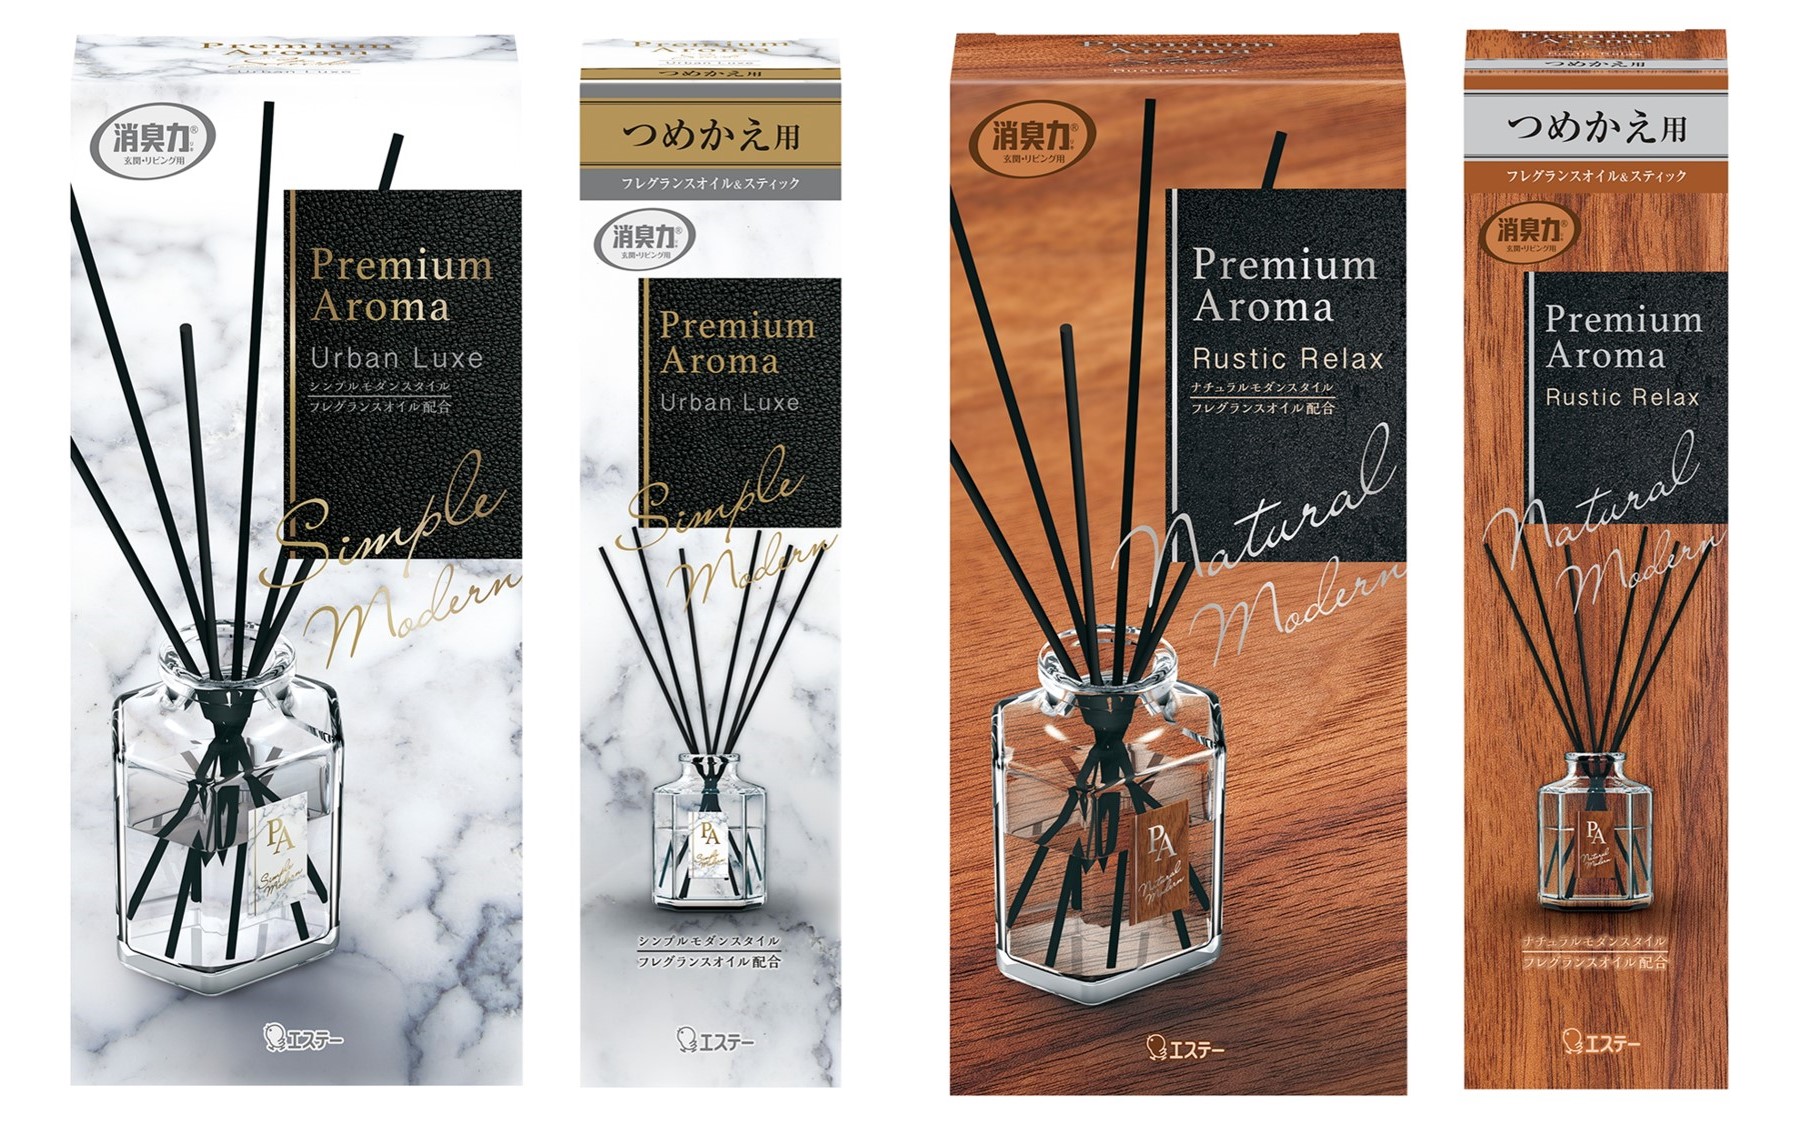 エステー】「玄関・リビング用 消臭力 Premium Aroma Stick」と他3タイプに新たな2つの香りを新発売｜エステー株式会社のプレスリリース